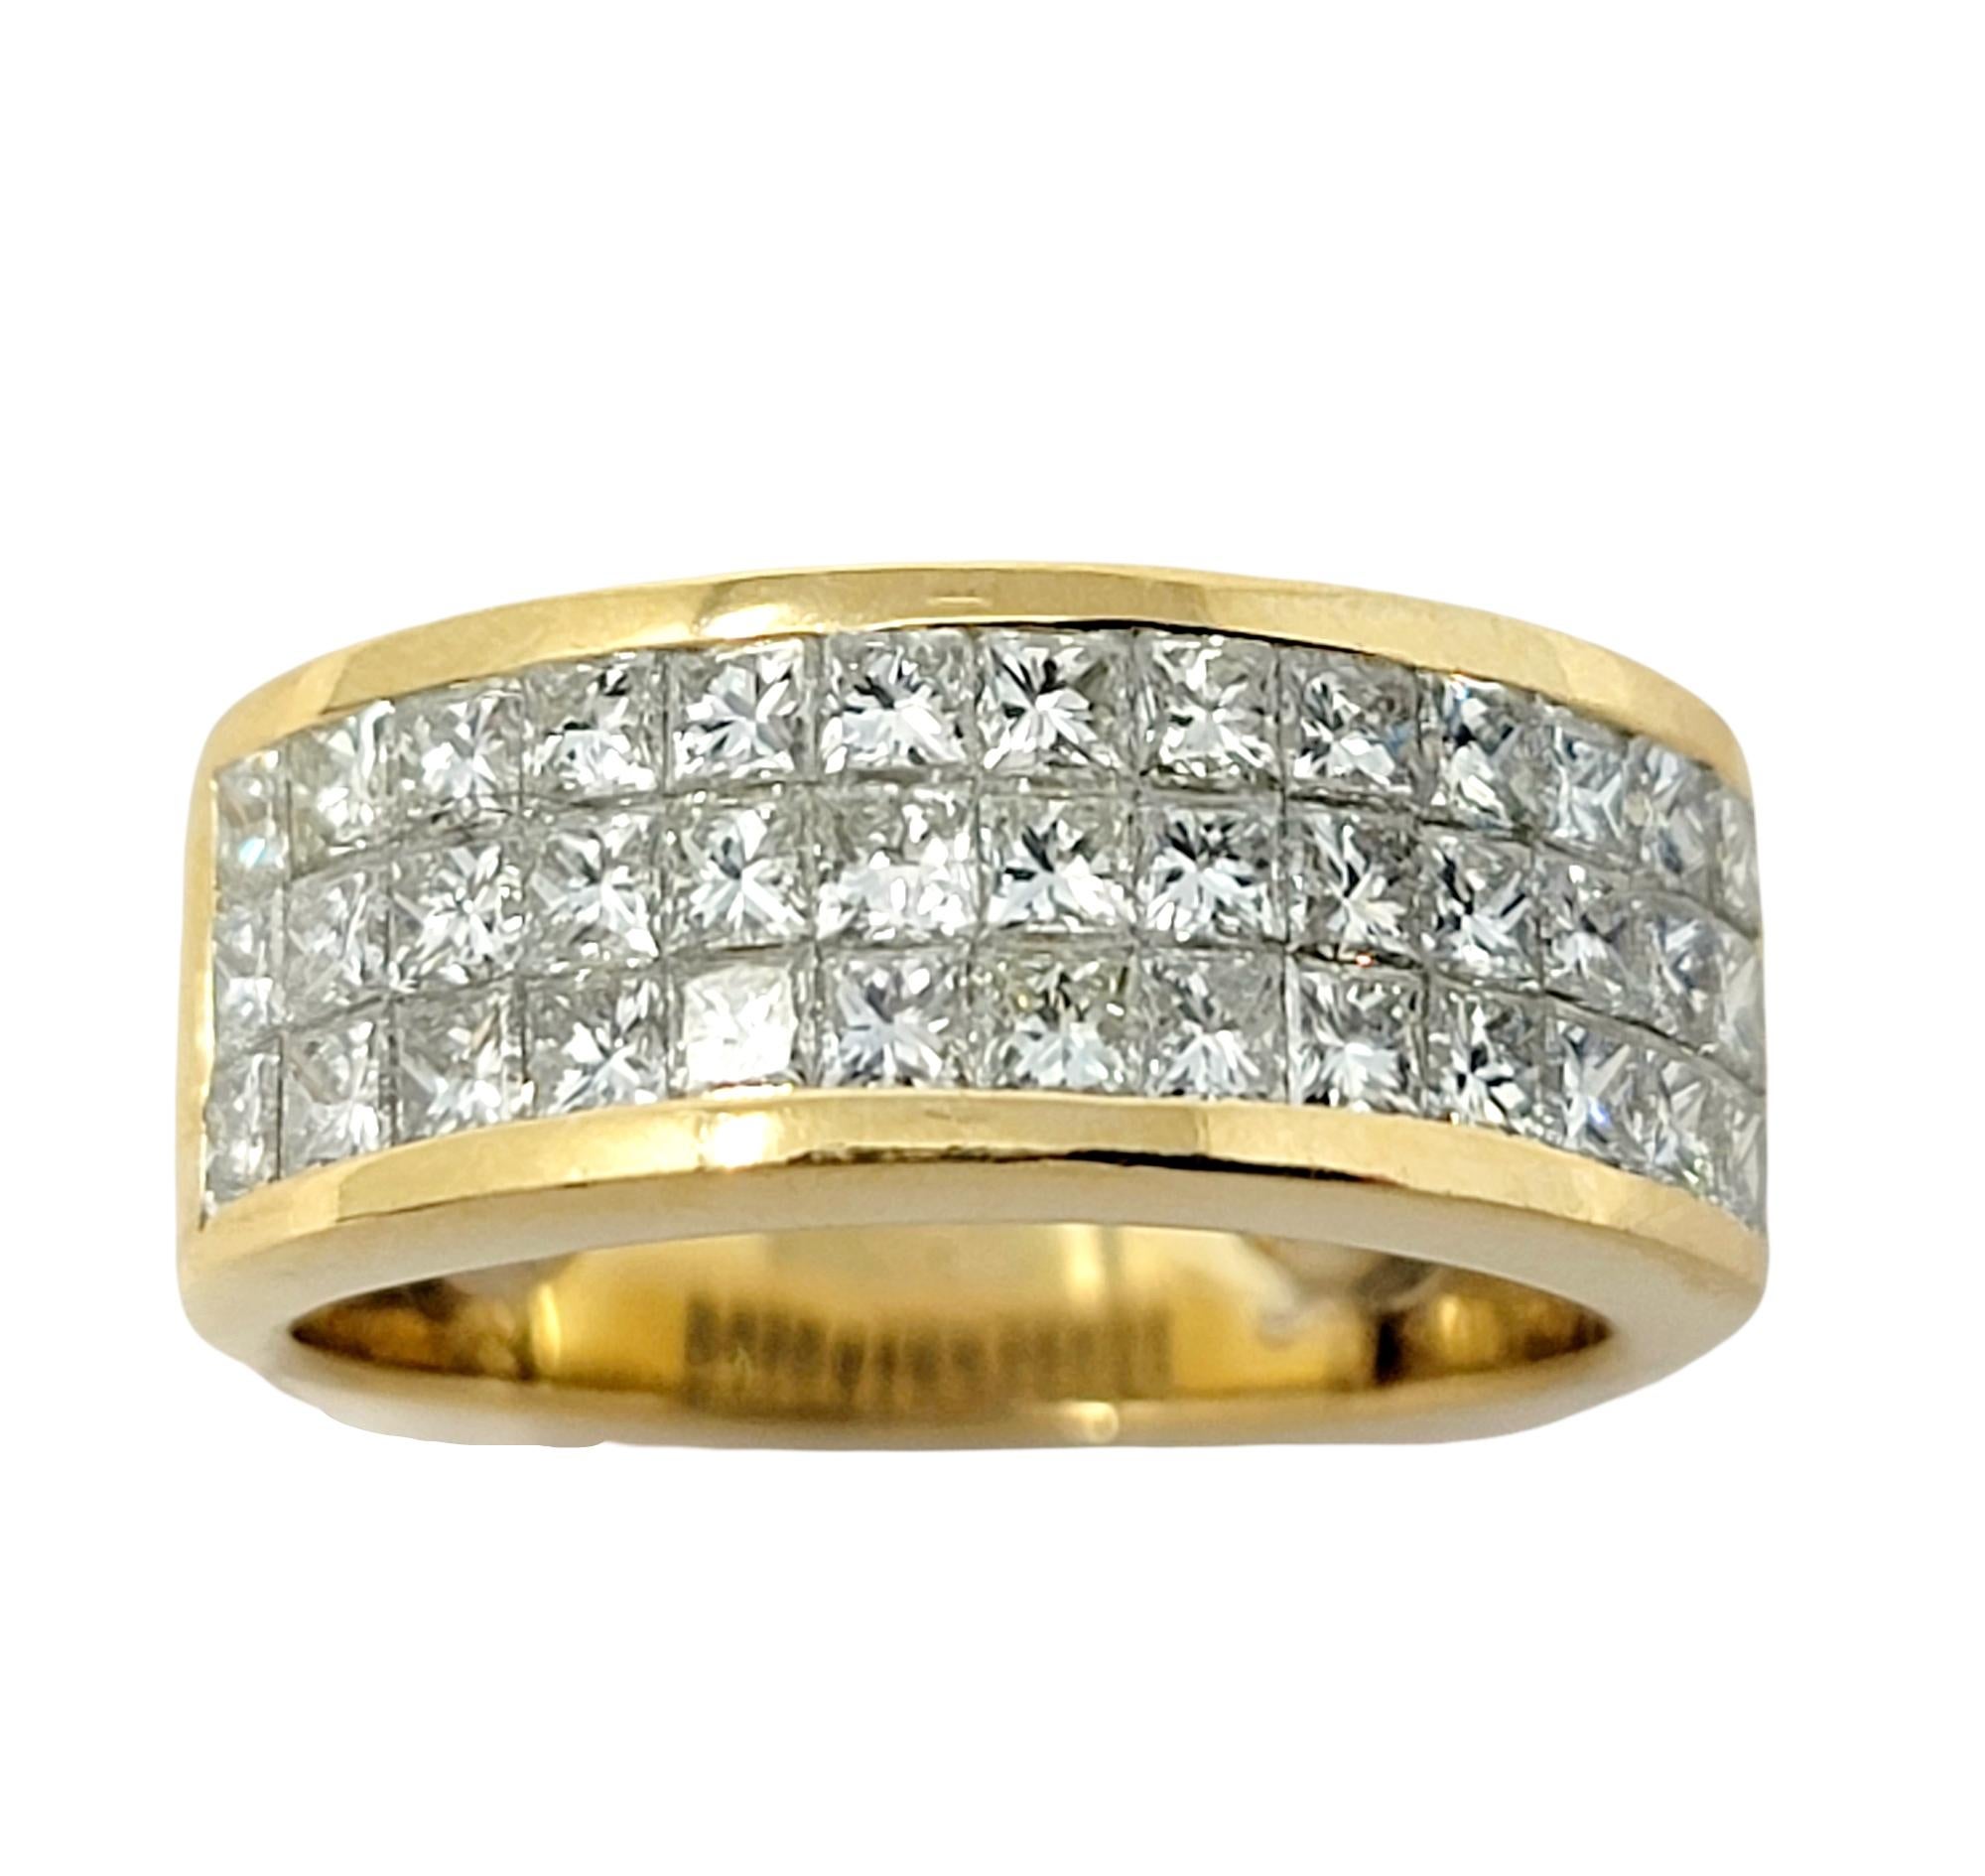 Ringgröße: 4.25

Dieser schillernde Diamantring legt sich elegant um den Finger und bringt ihn zum Funkeln. Die unsichtbar gefassten Natursteine fangen das Licht aus jedem Winkel ein und lassen sie wunderschön schimmern und glänzen. Die polierte